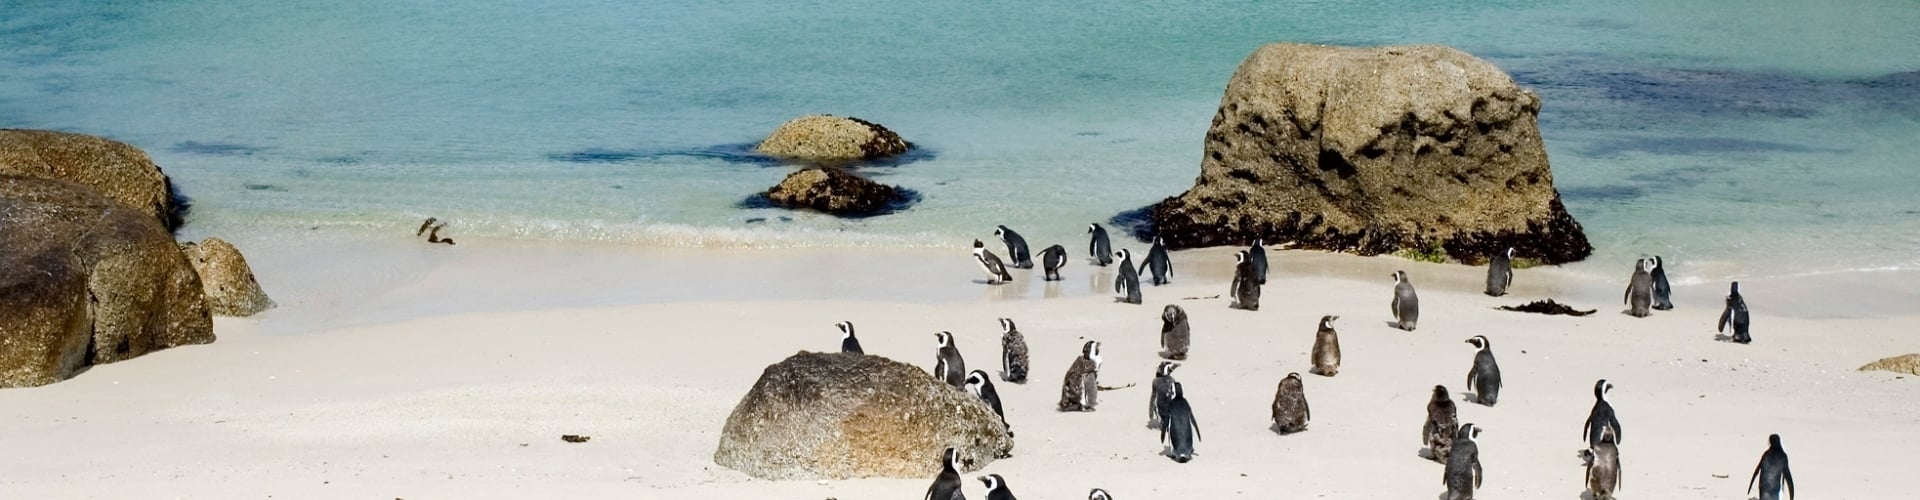 pinguins-spotten-zuid-afrika